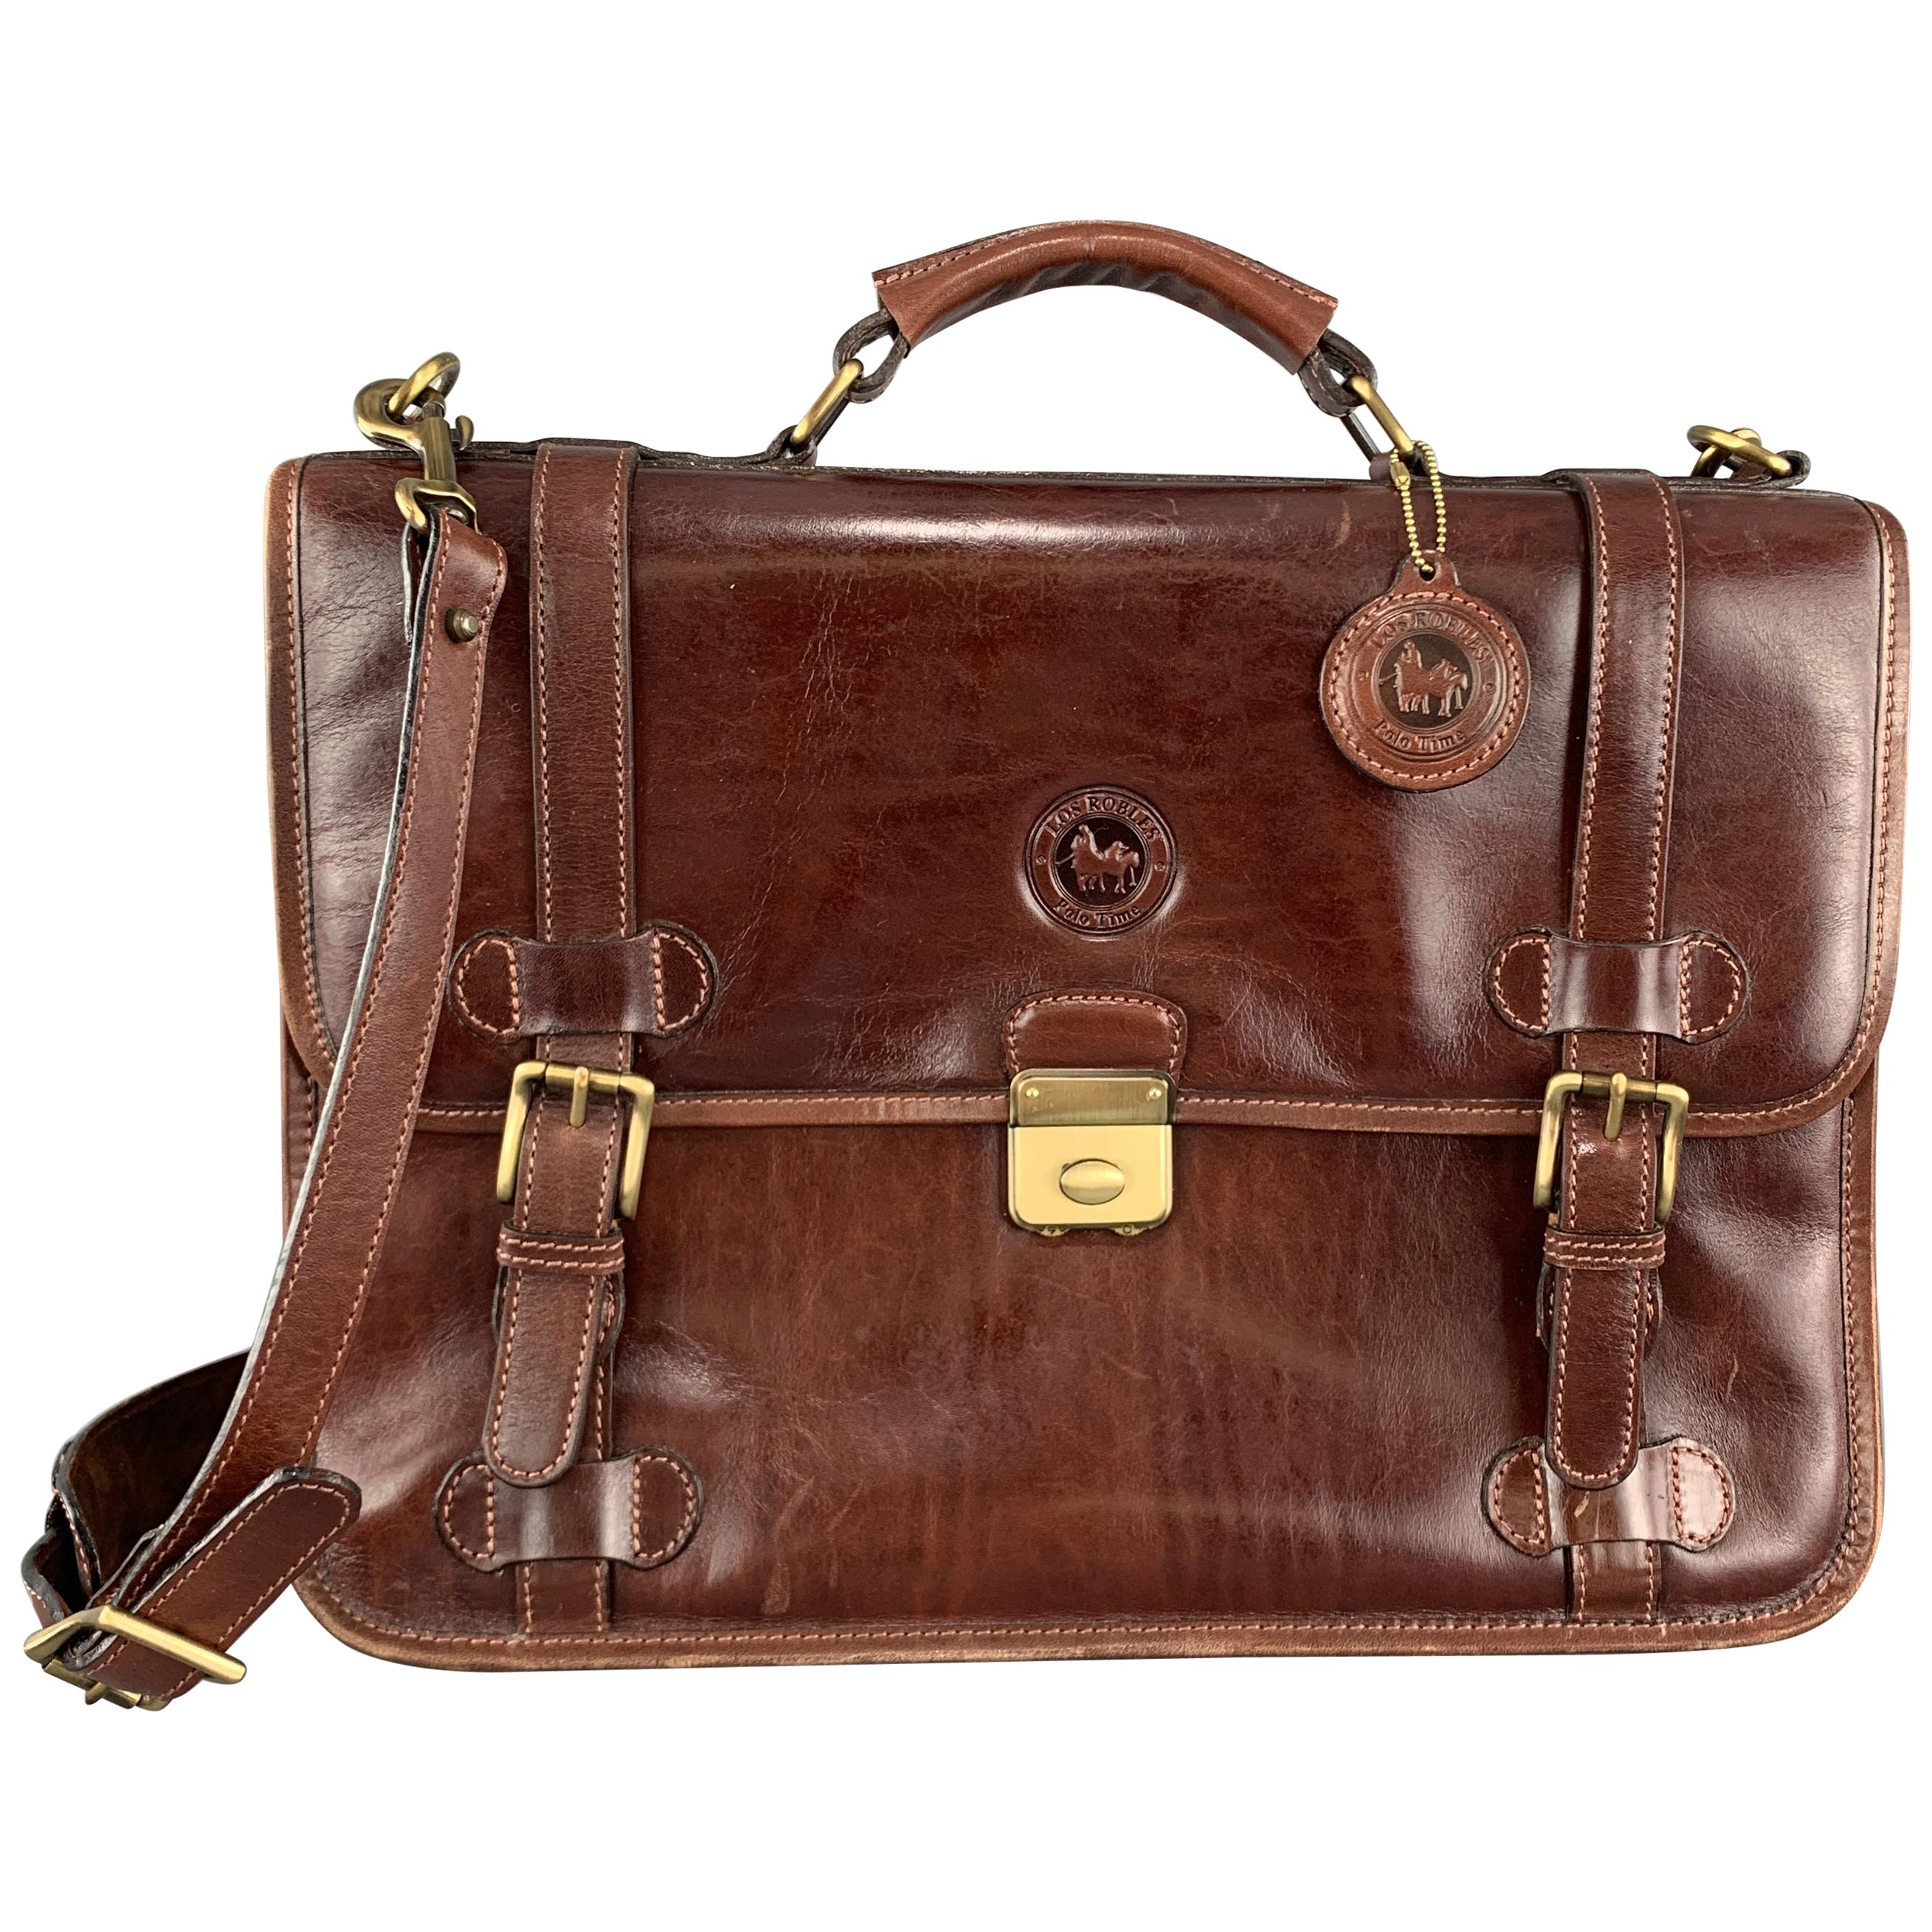 LOS ROBLES POLO TIME Antique Cognac Leather Briefcase Satchel